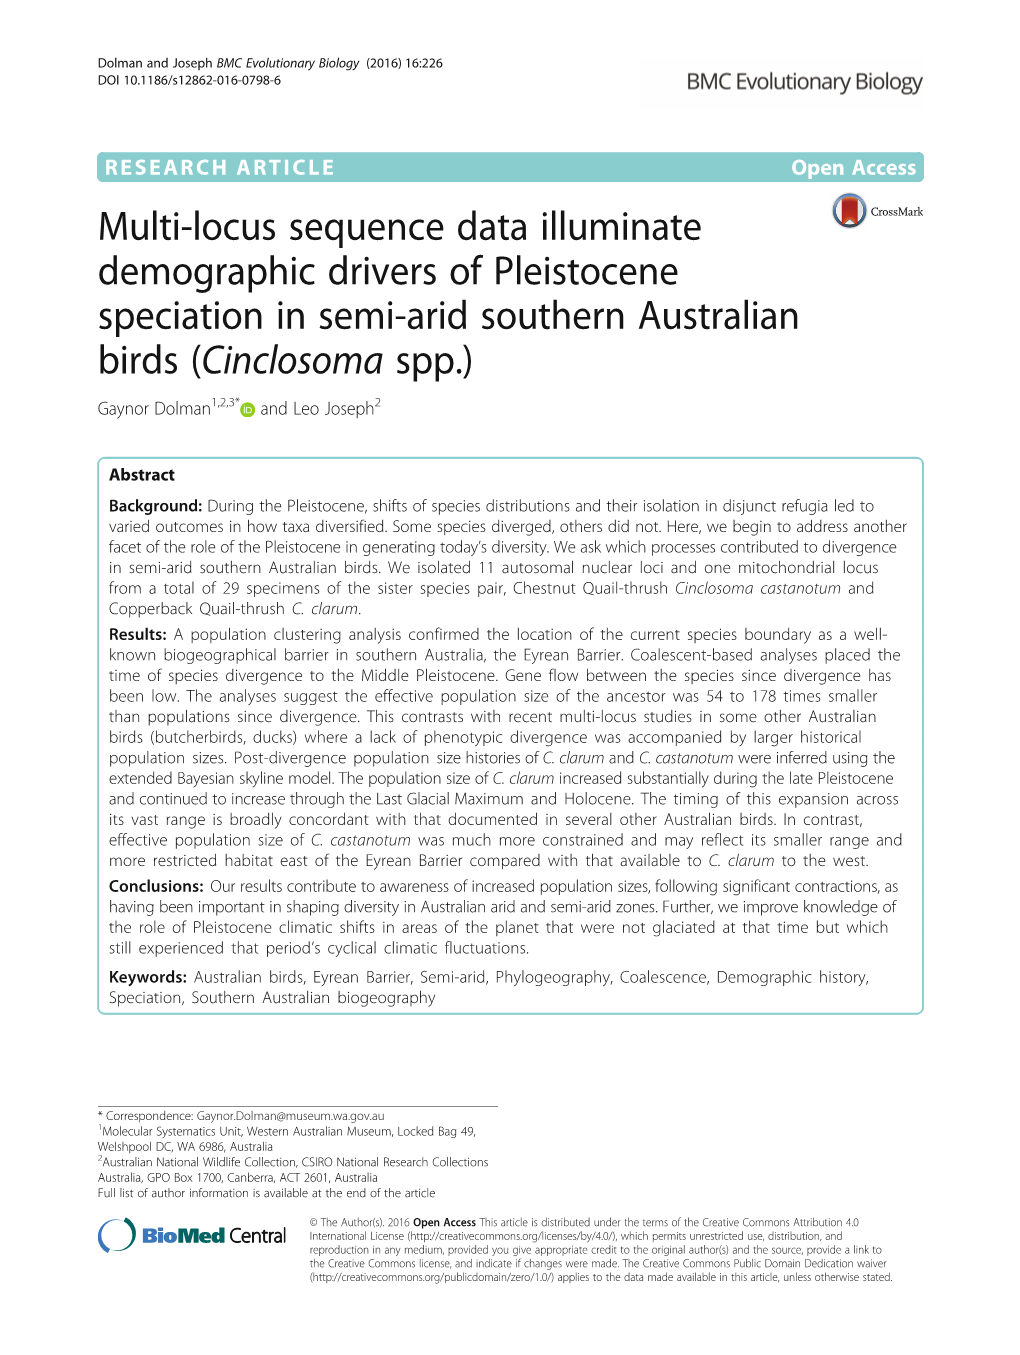 Multi-Locus Sequence Data Illuminate Demographic Drivers Of